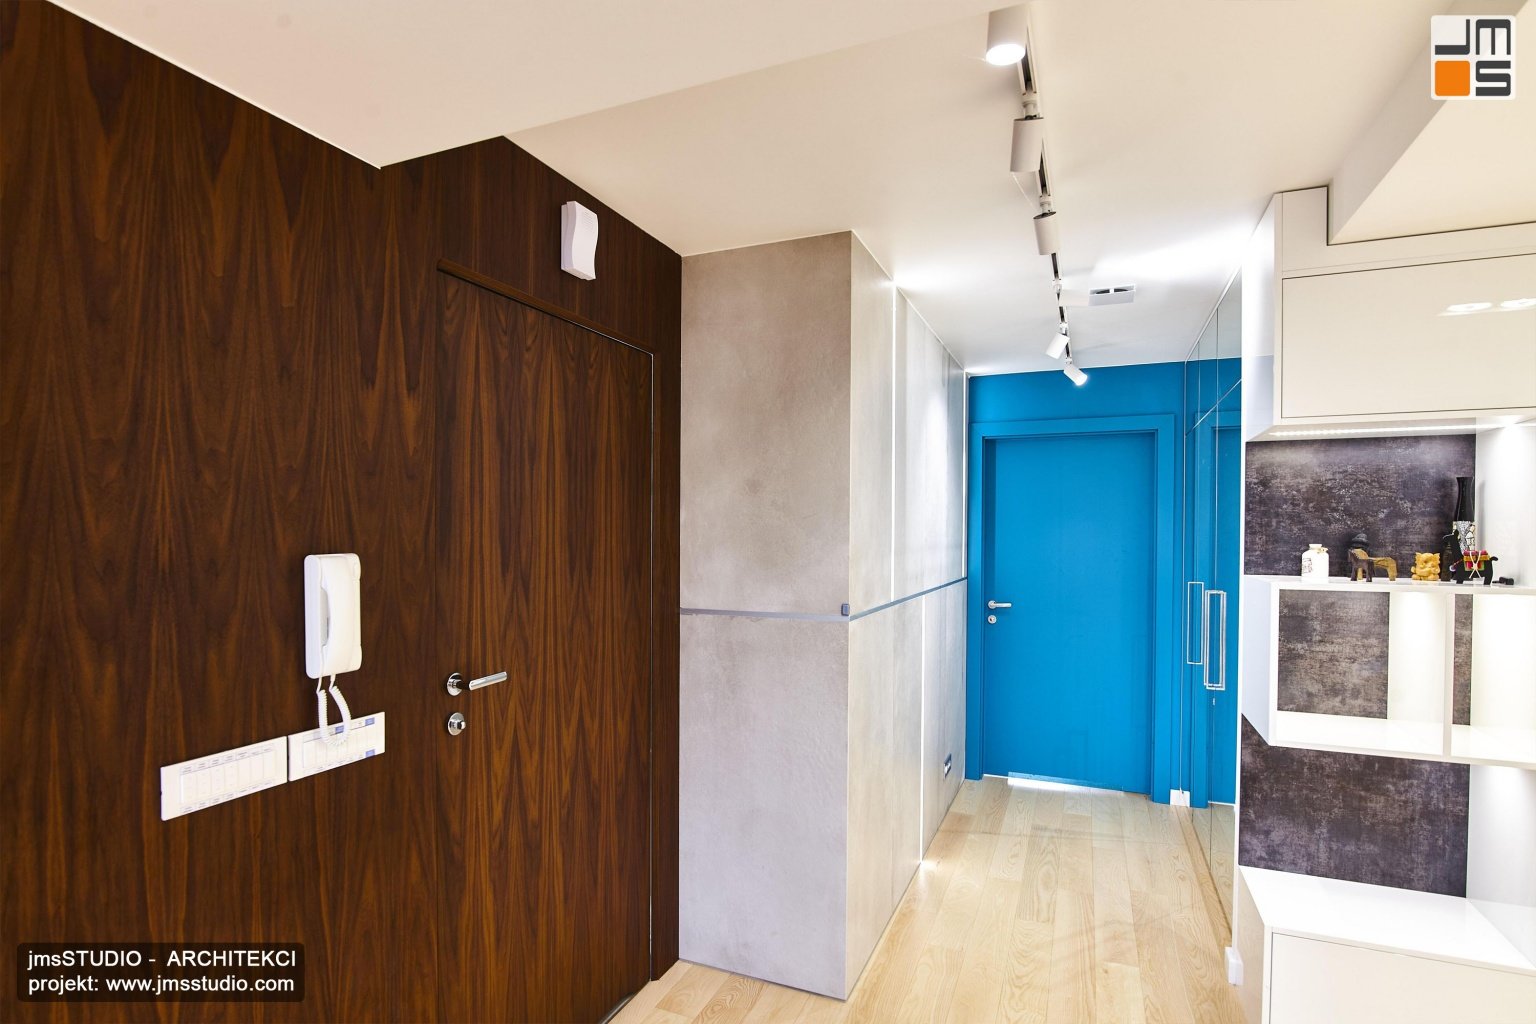 Pomysł na projekt wnętrz holu w apartamencie to trzy kolorowe płaszczyzny pomysł na drewnianą ścianę z ukrytymi drzwiami oraz turkusowe lakierowane drzwi i beton architektoniczny